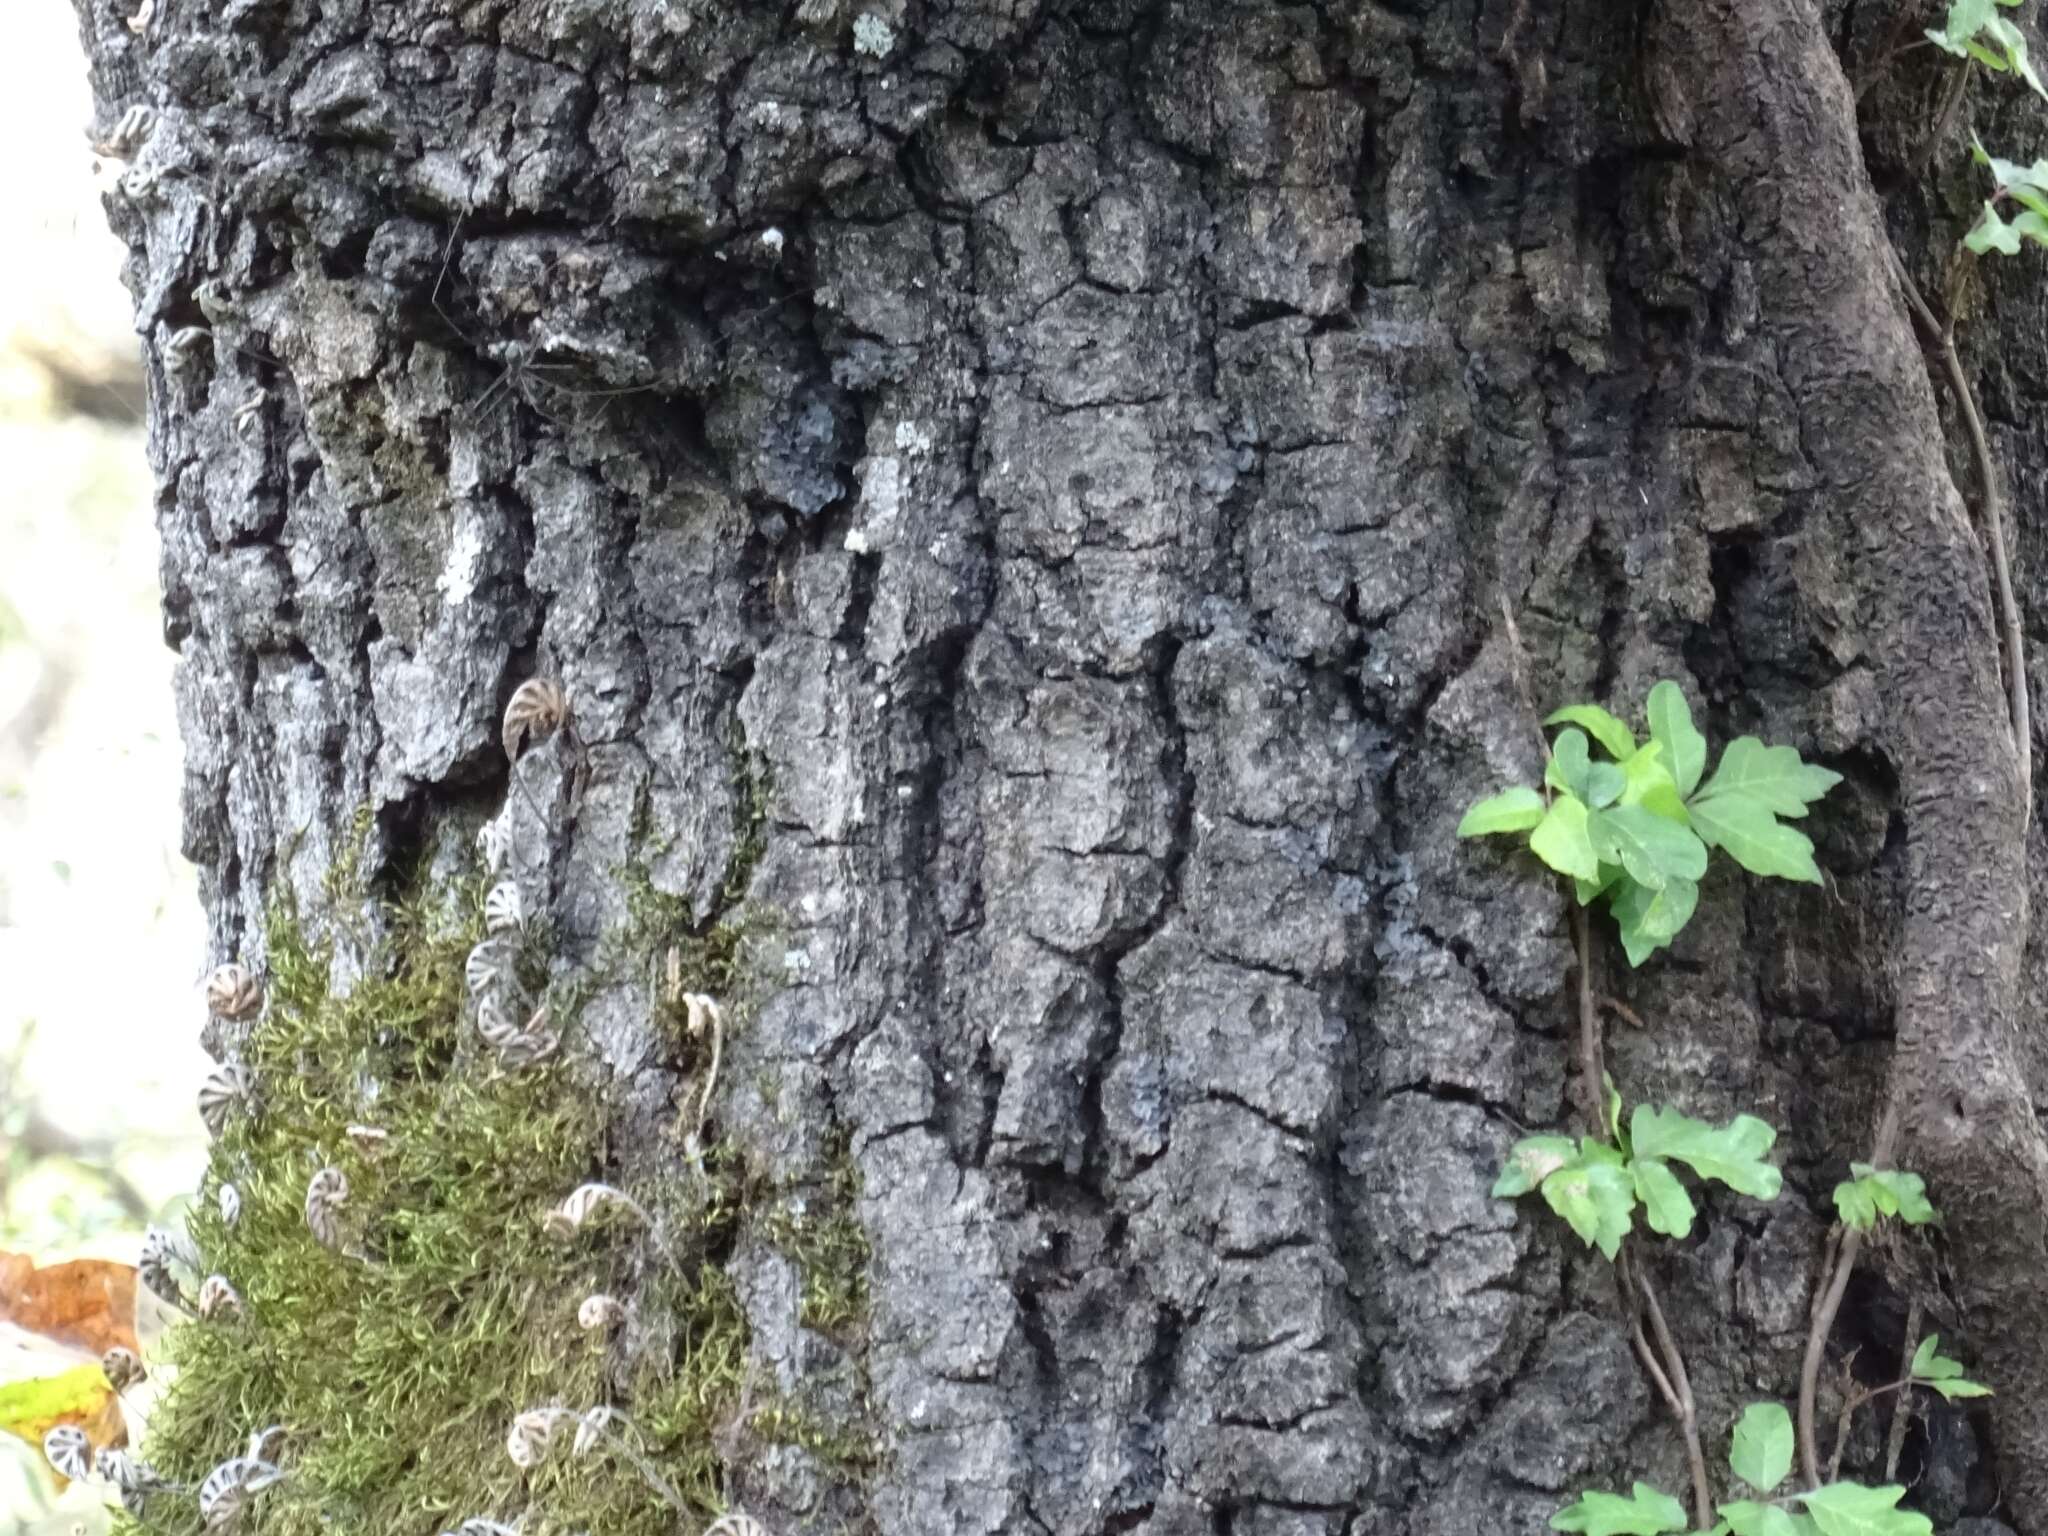 Image of Quercus runcinatifolia Trel. & C. H. Müll.